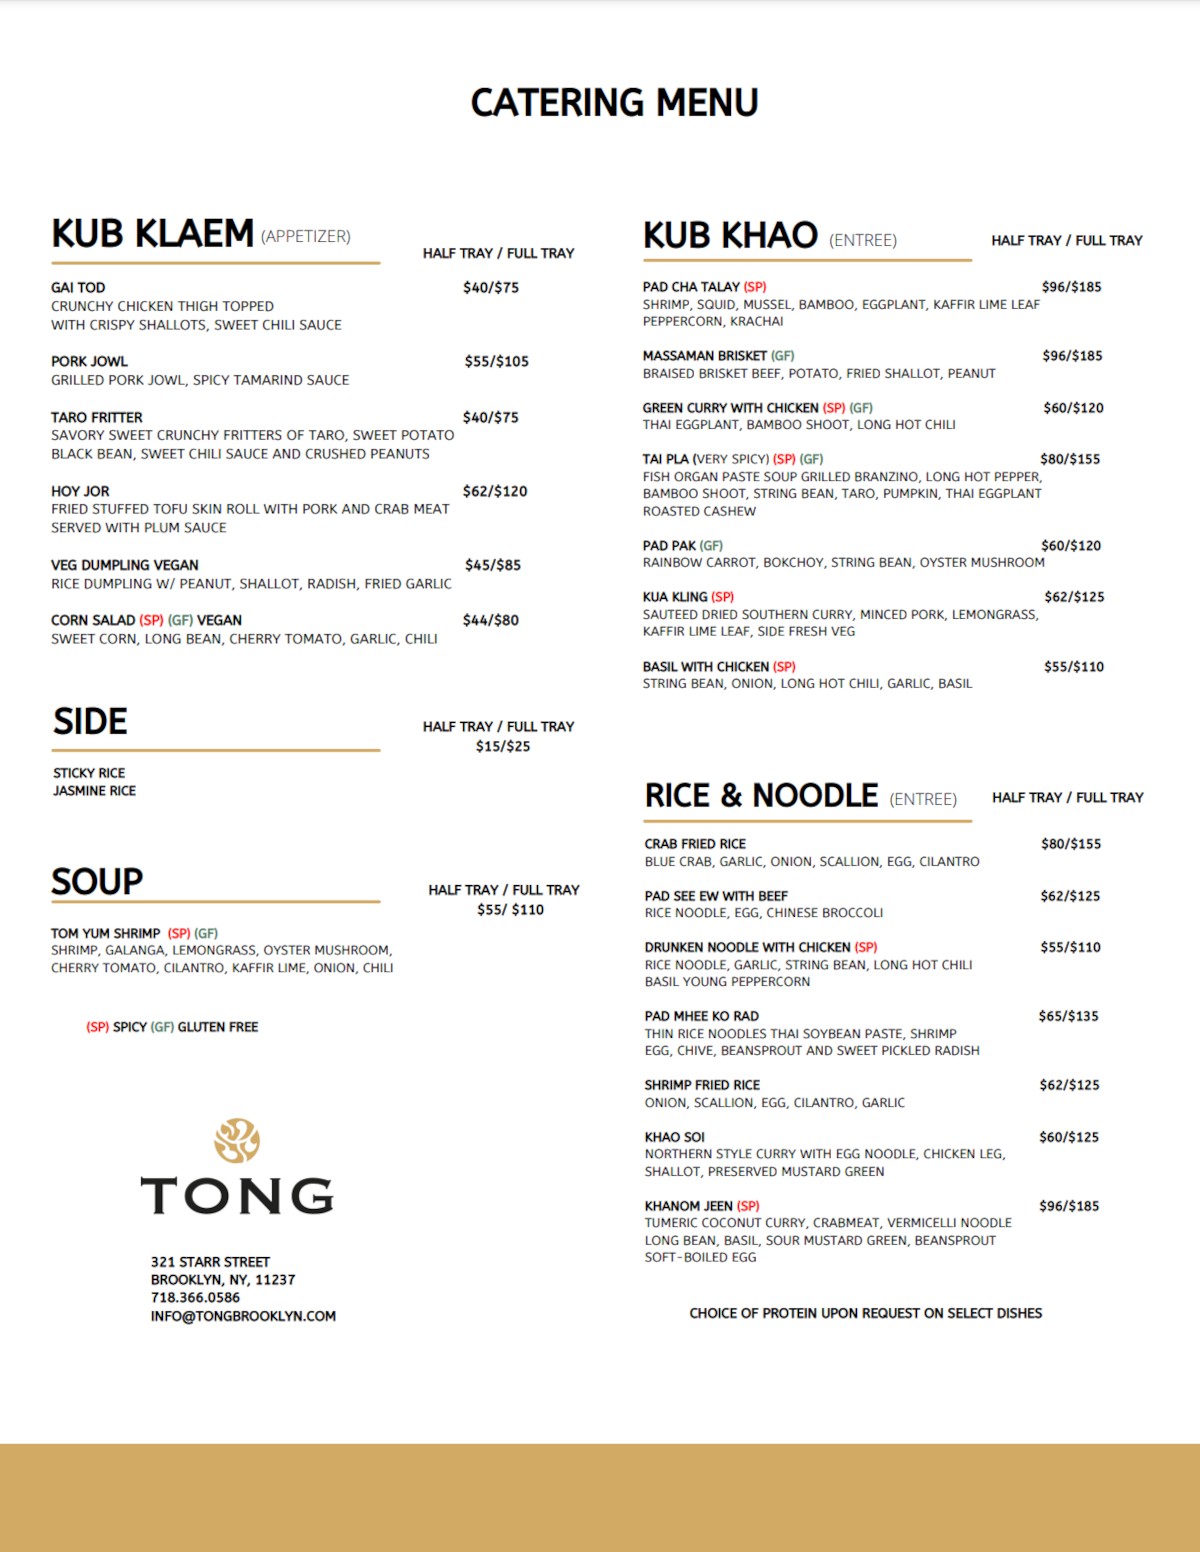 Catering menu in pdf